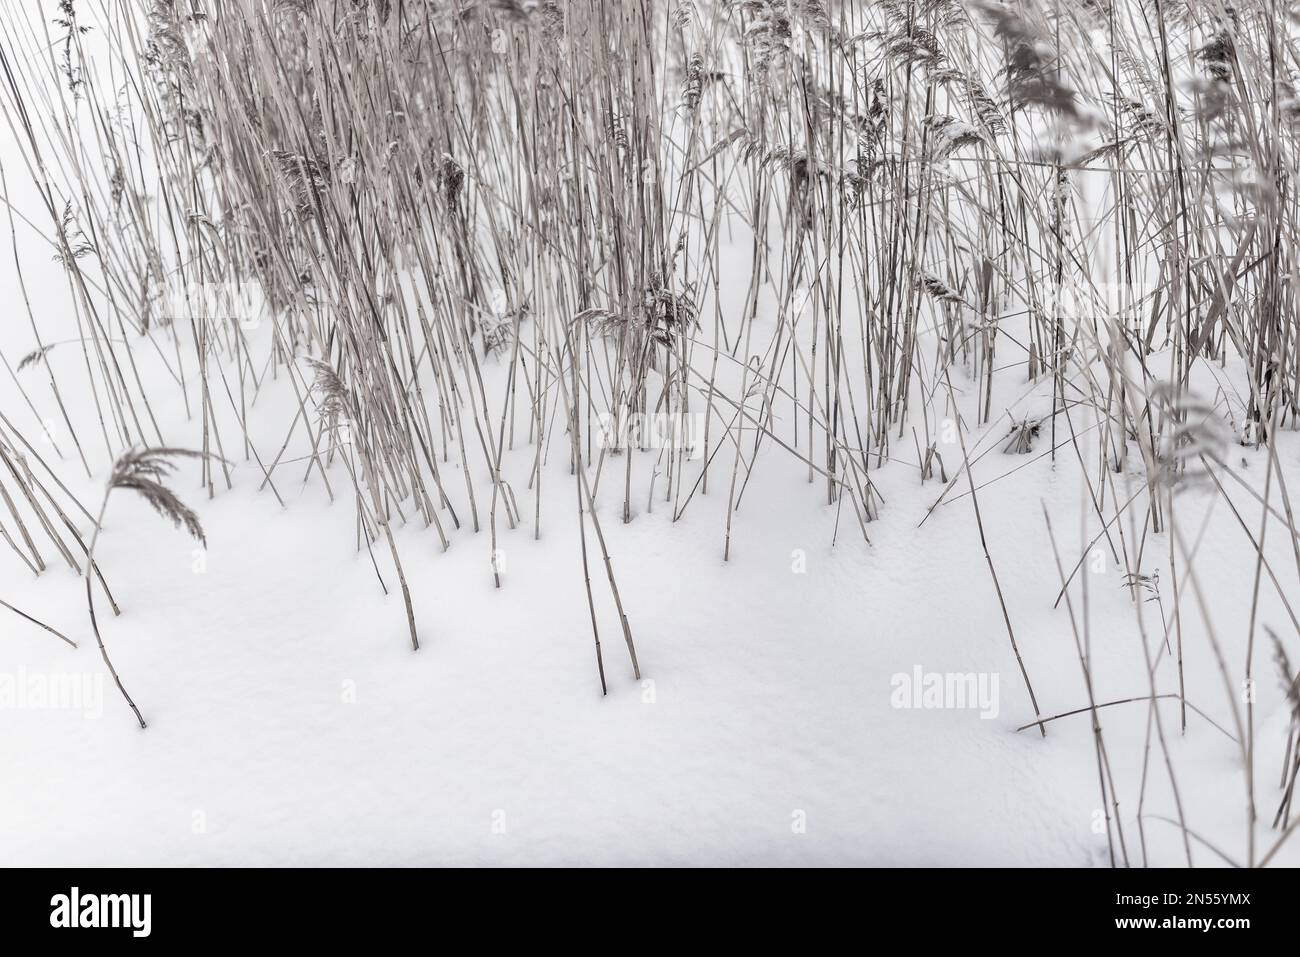 D'inverno i gambi secchi di erba di canna crescono dalla neve bianca. Foto Stock